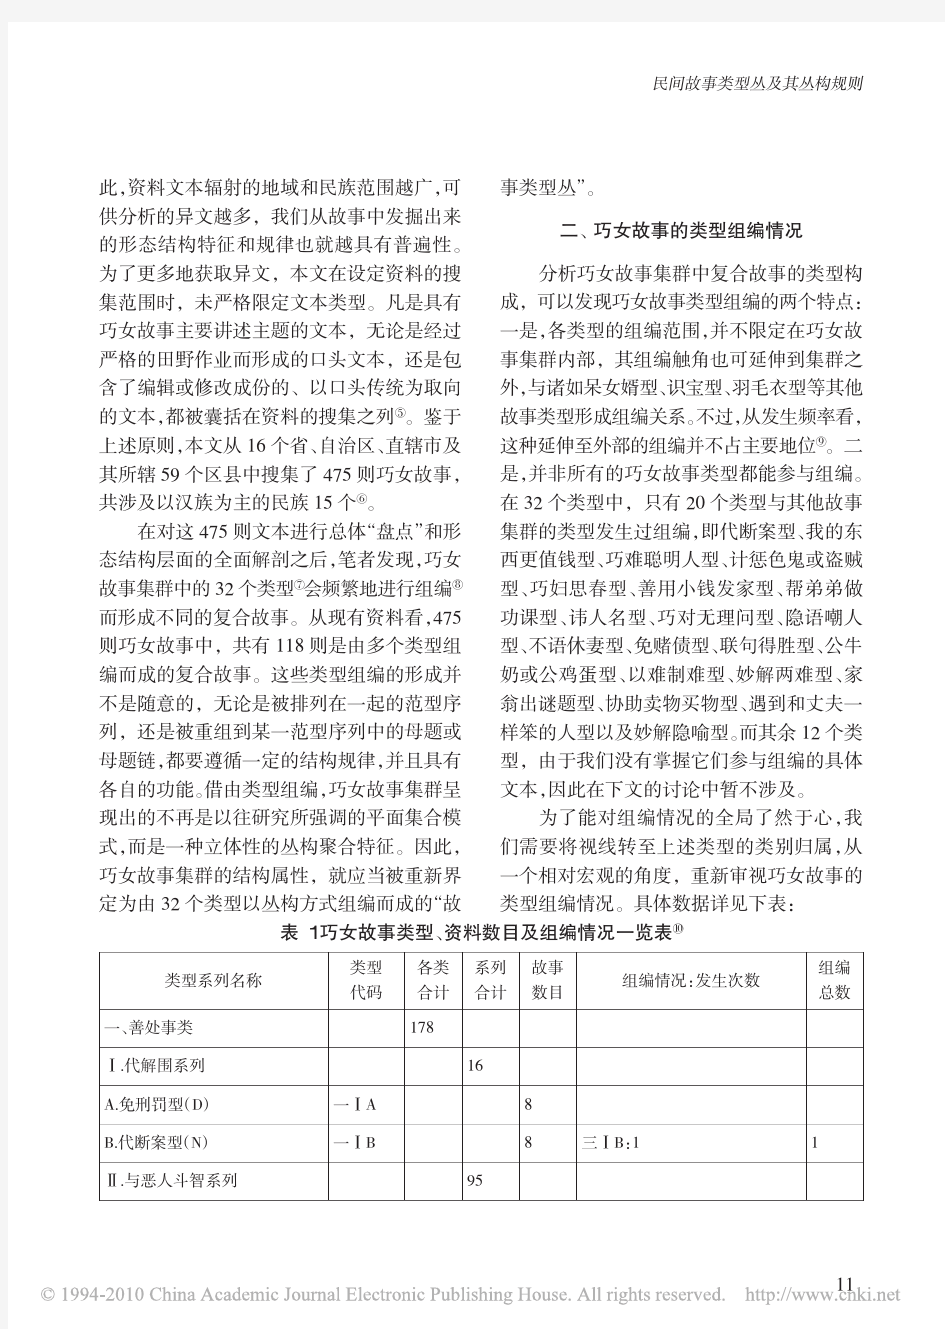 民间故事类型丛及其丛构规则_以中国巧女故事的类型组编形式为例